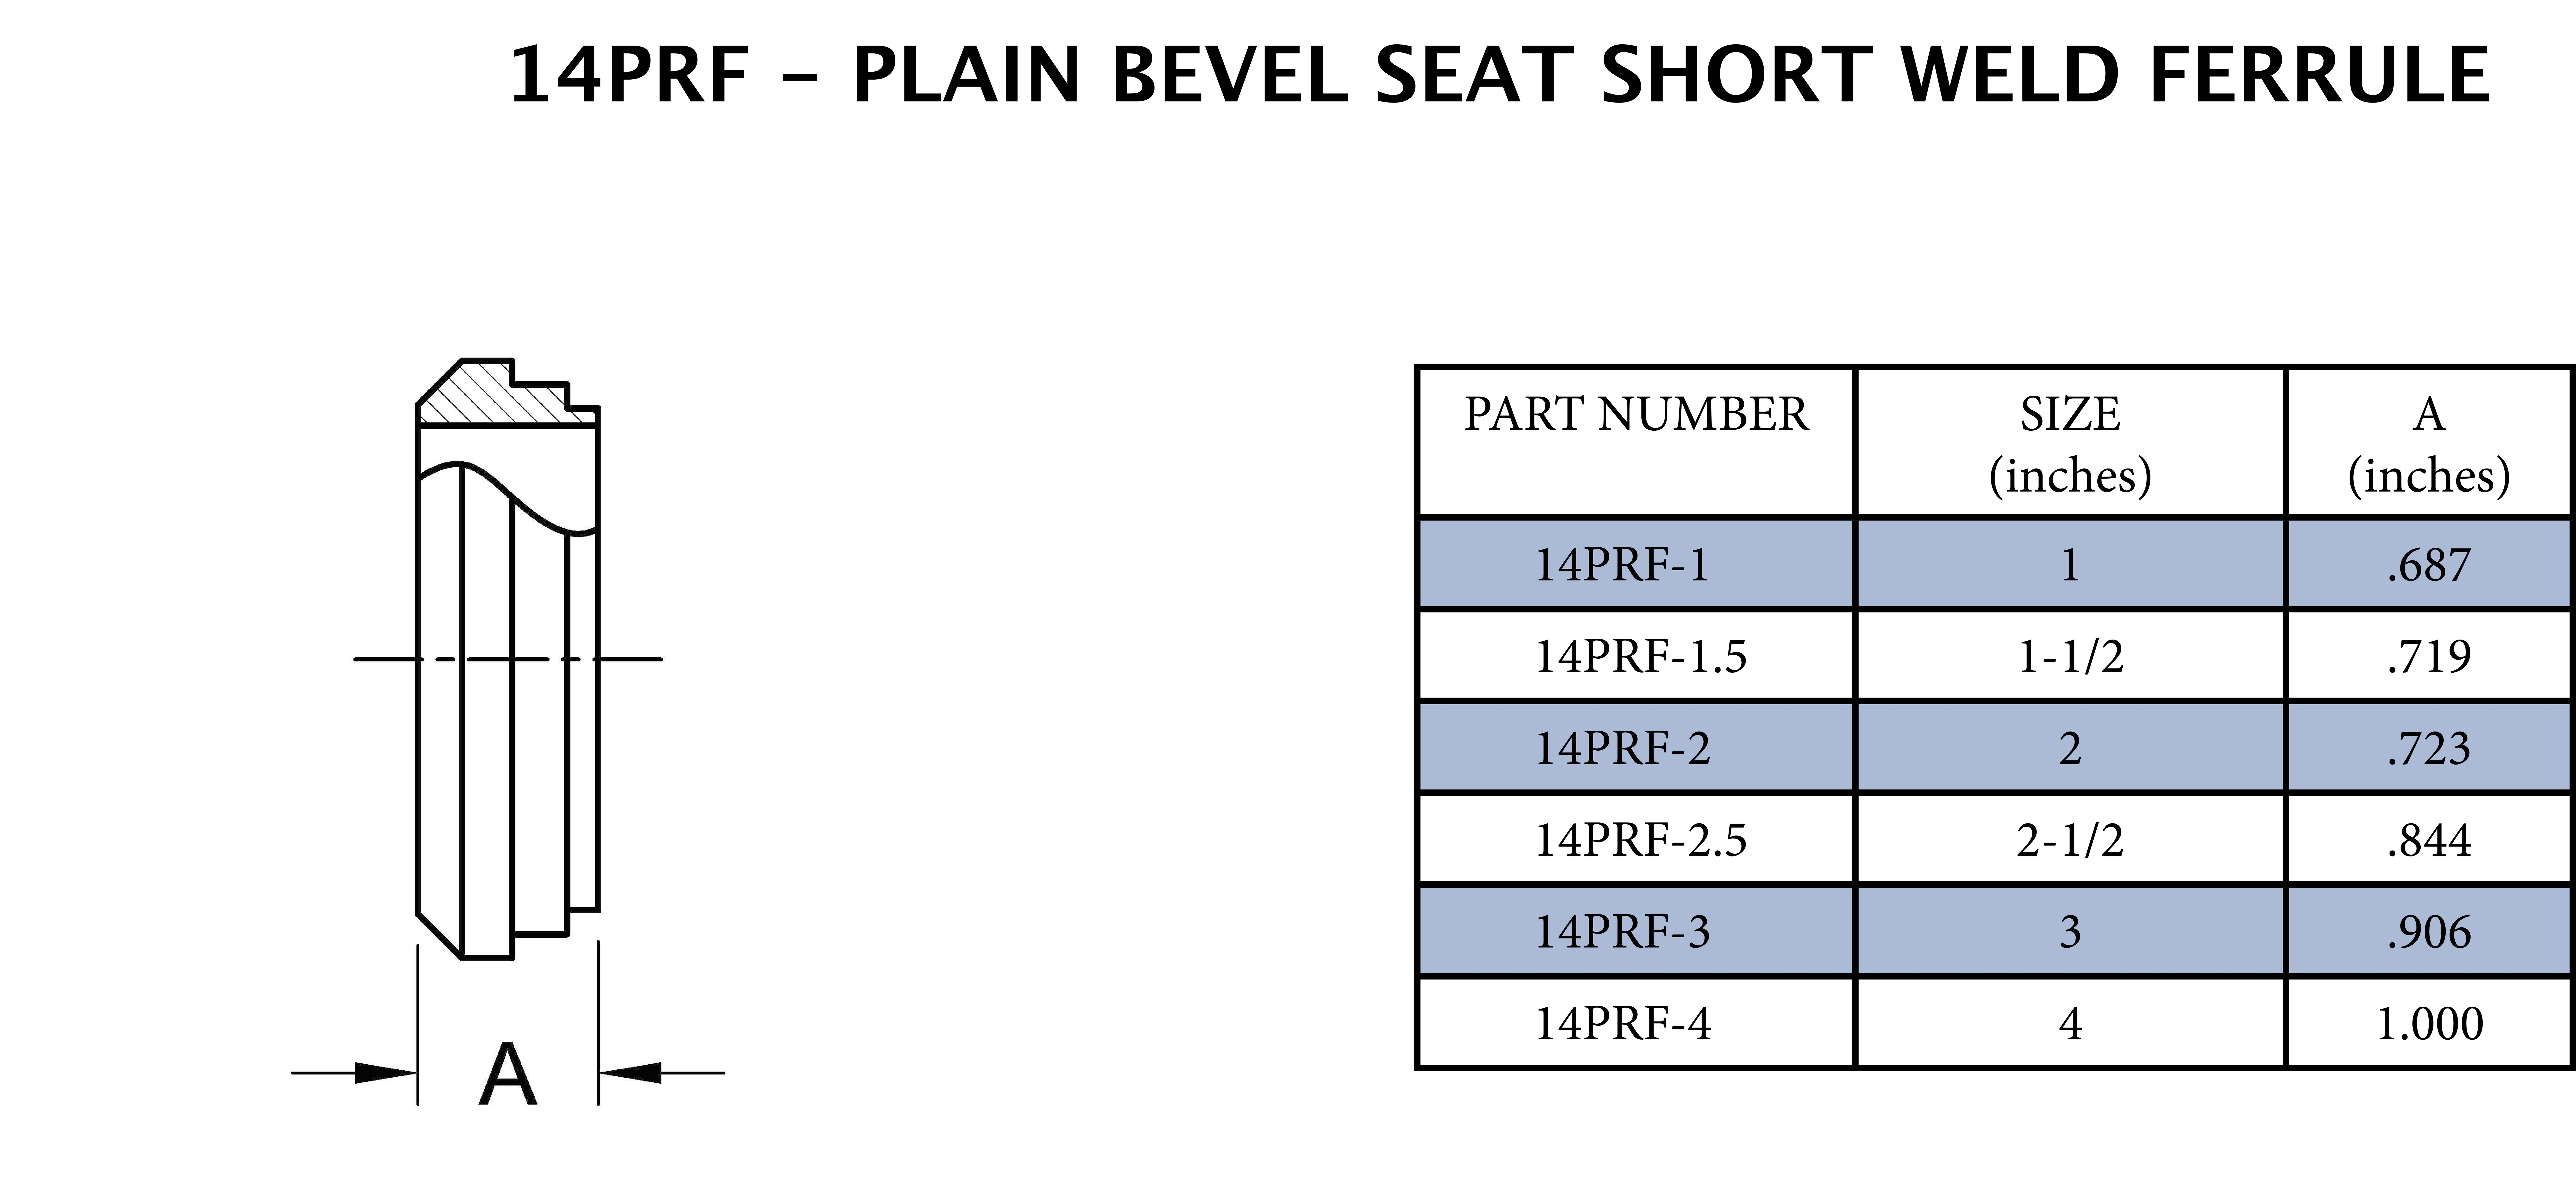 3 Plain Bevel Seat X Short Weld End - .906 Long 316SS